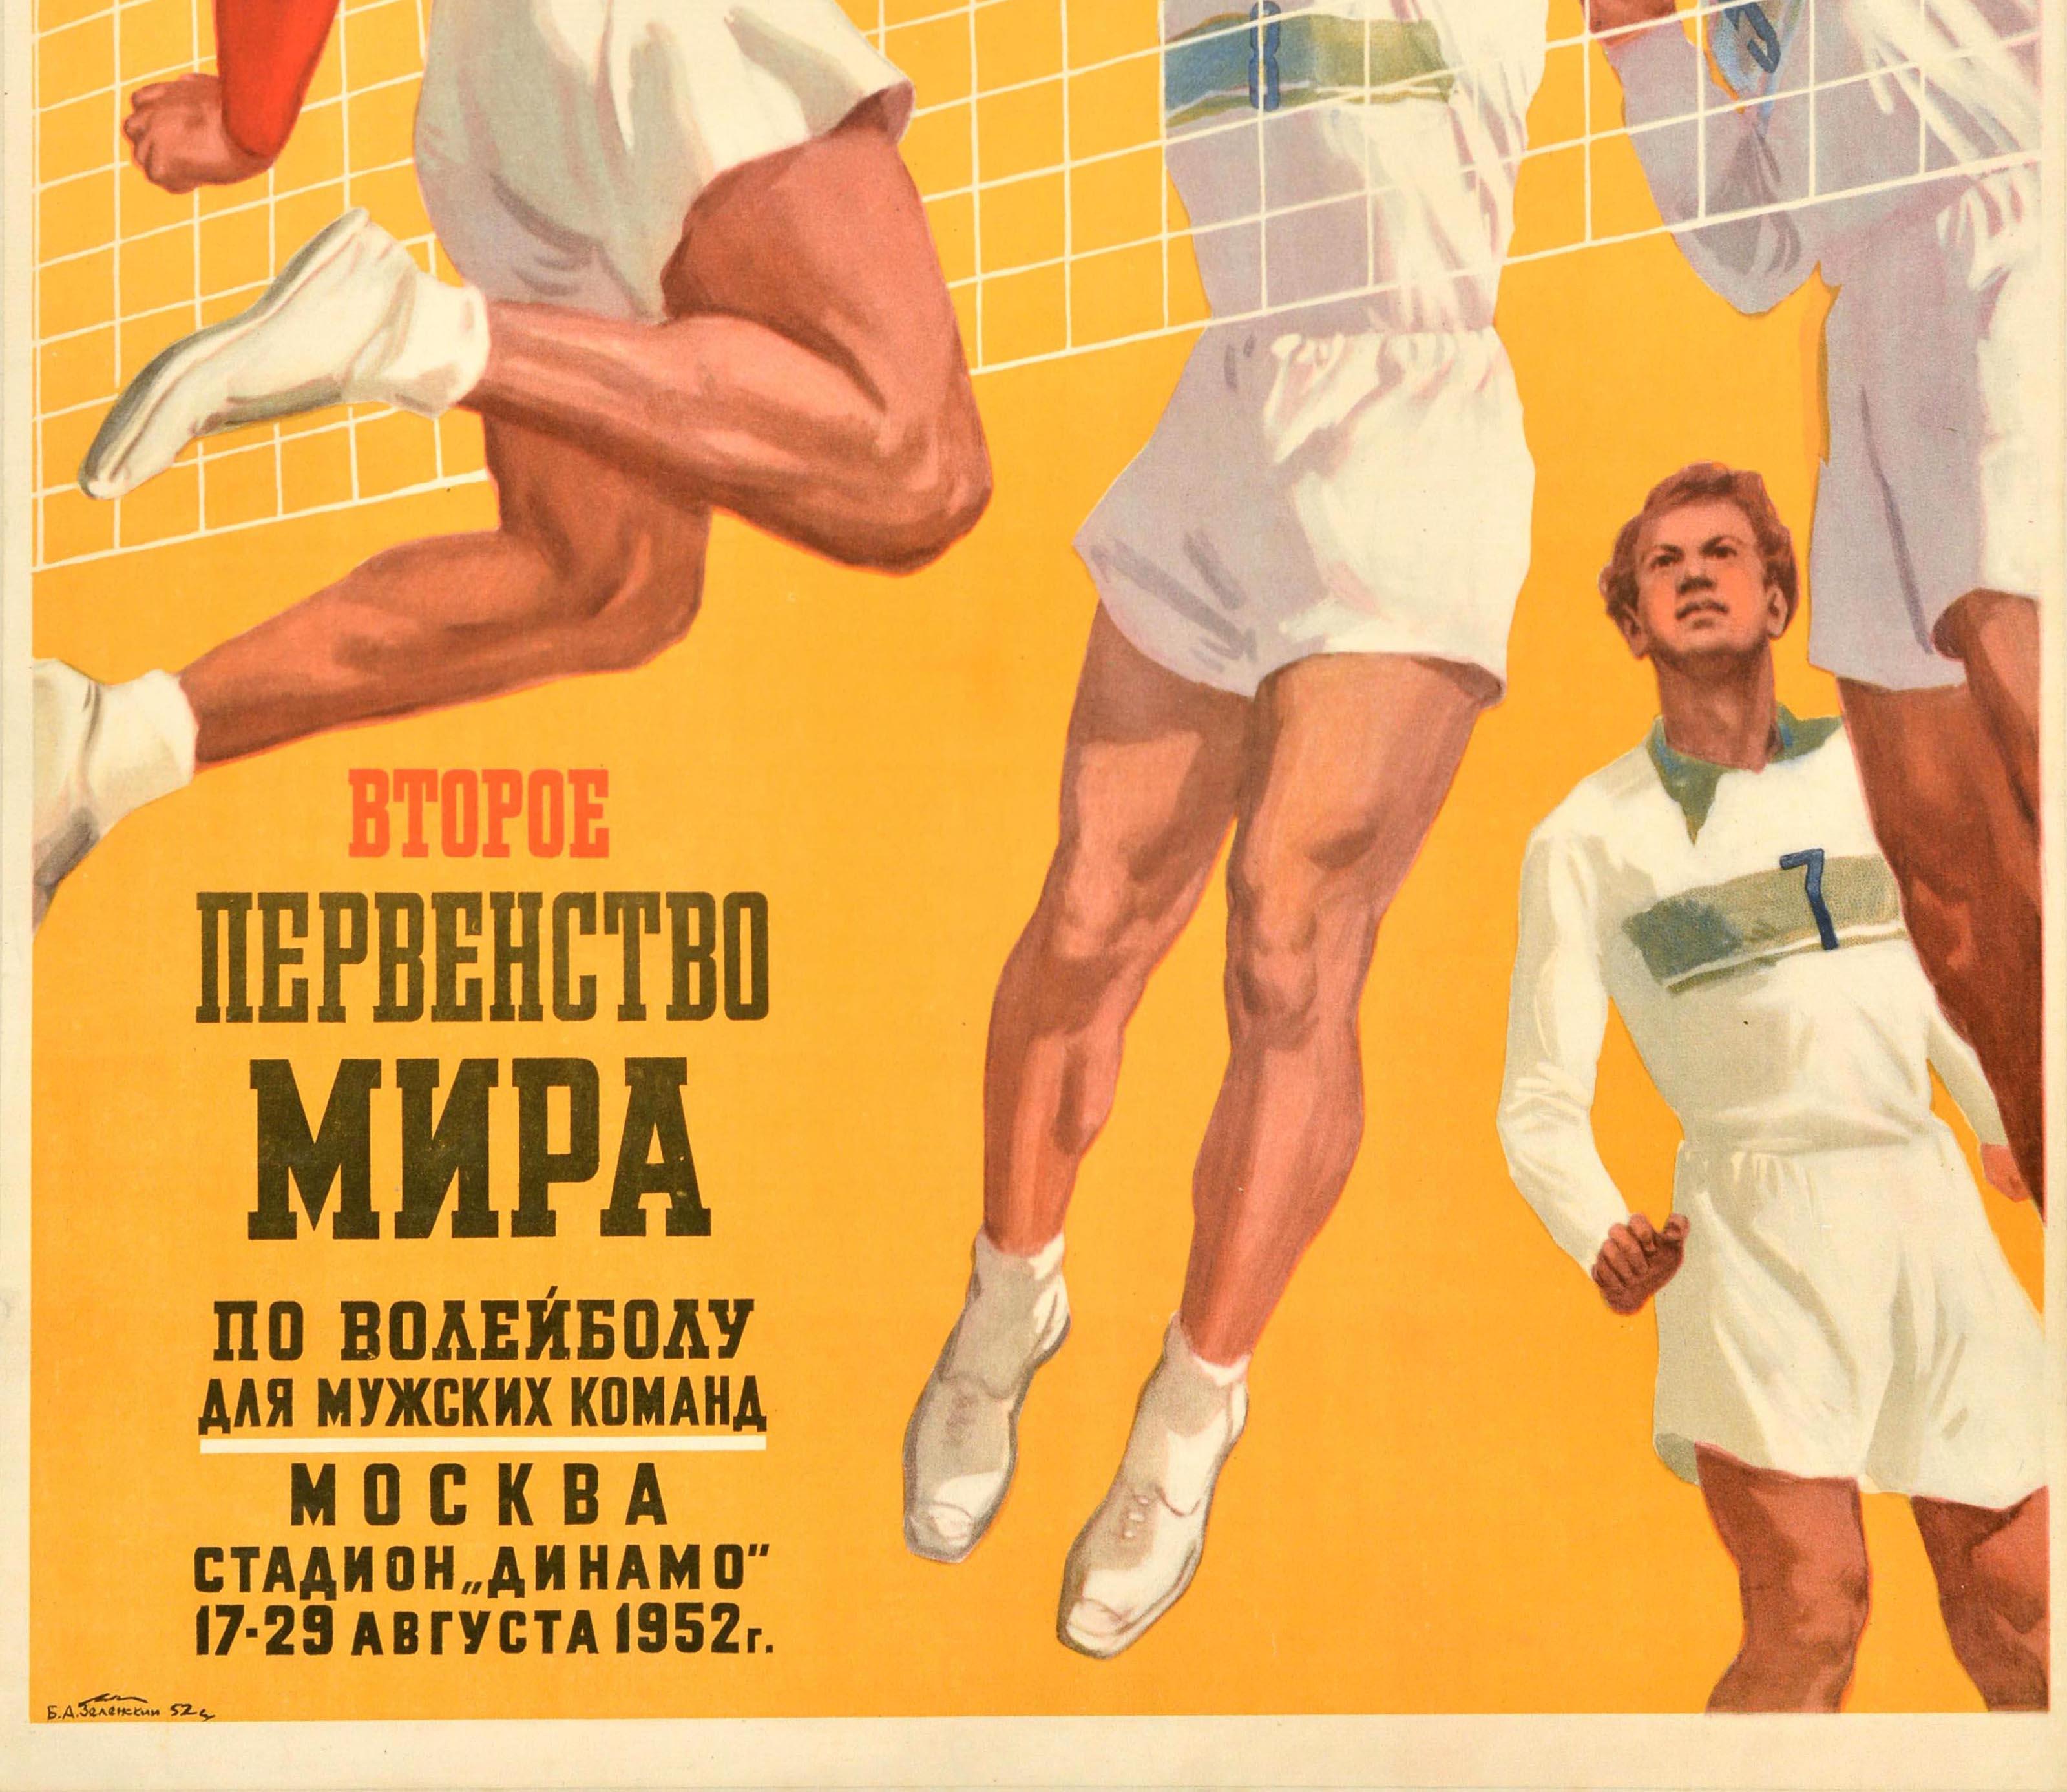 Originales Vintage-Sportplakat für die Zweite Weltmeisterschaft im Volleyball der Männer / Второе Первенство Мира по Волеиболу для Мужских Команд, die vom 17. bis 29. August 1952 im Dynamo-Stadion in Moskau stattfand, mit einem Volleyballspiel mit